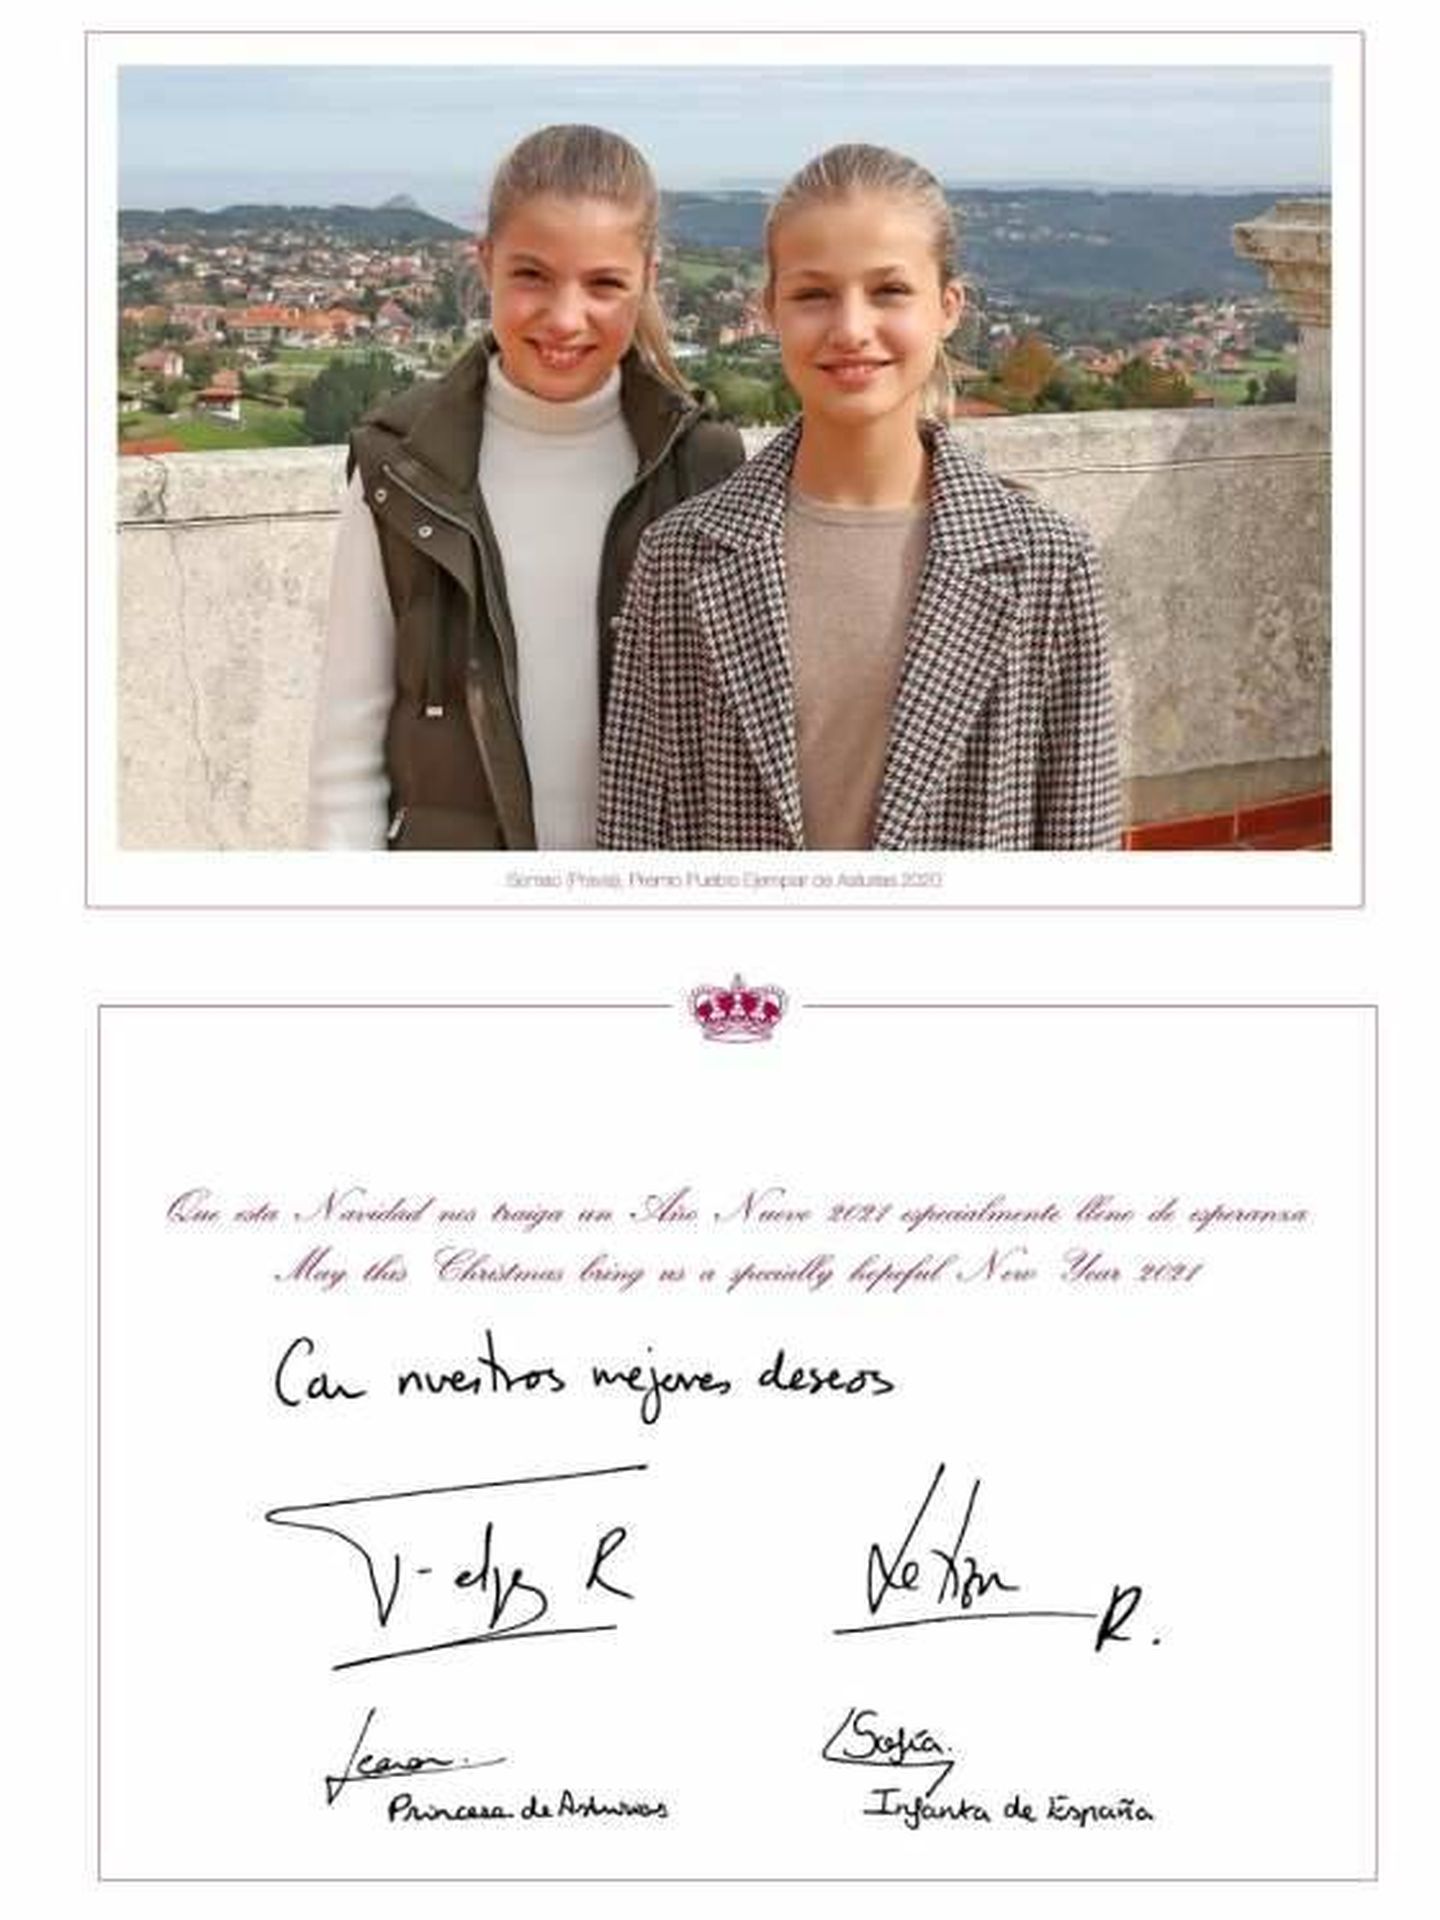 La princesa Leonor y la infanta Sofía, en la felicitación navideña de 2020. (Casa de S.M el Rey)